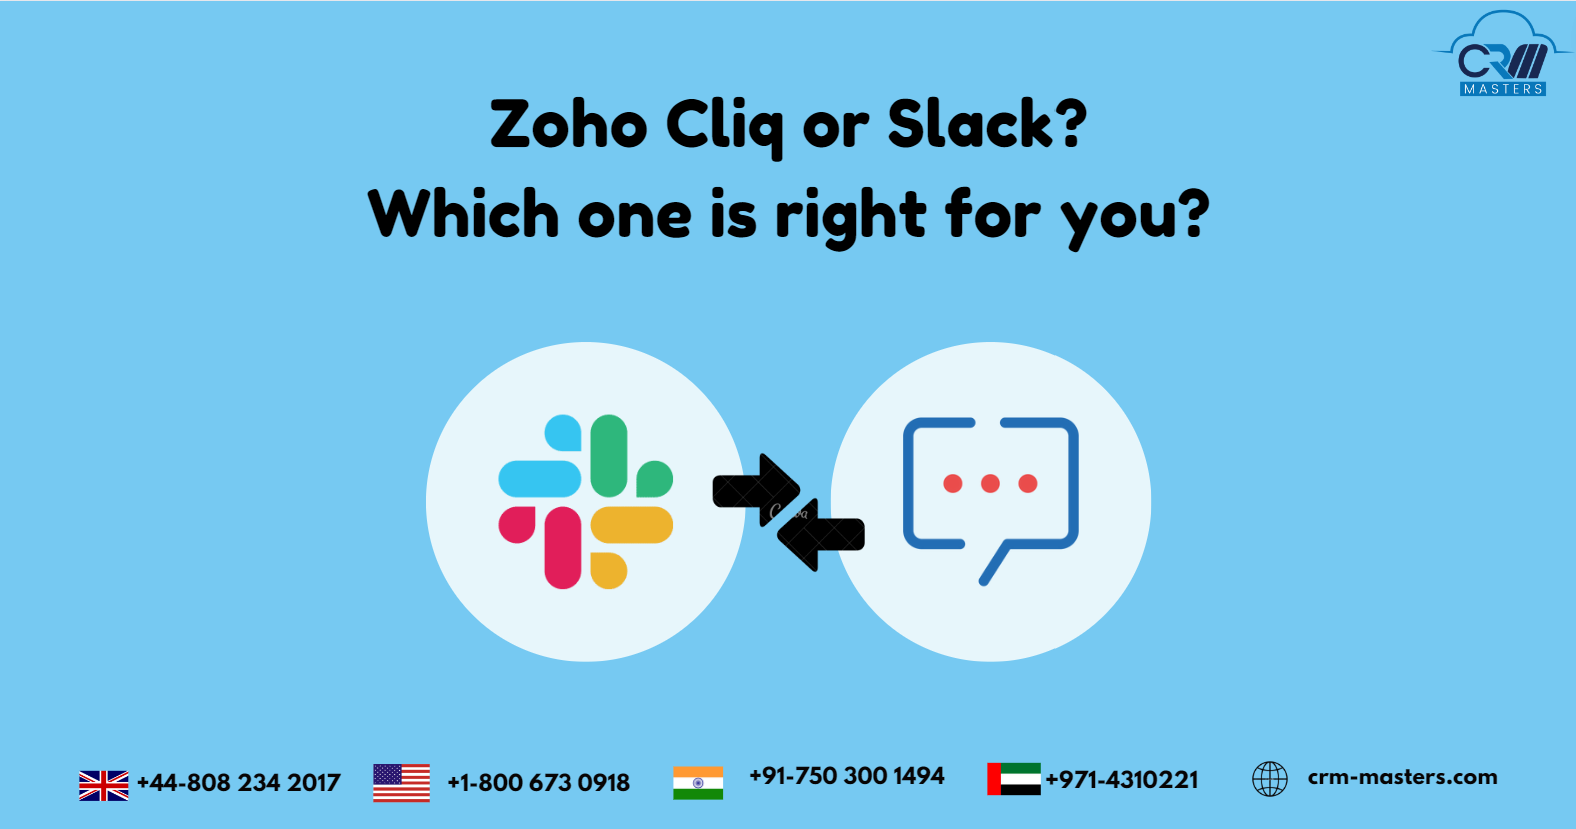 Zoho Cliq or Slack